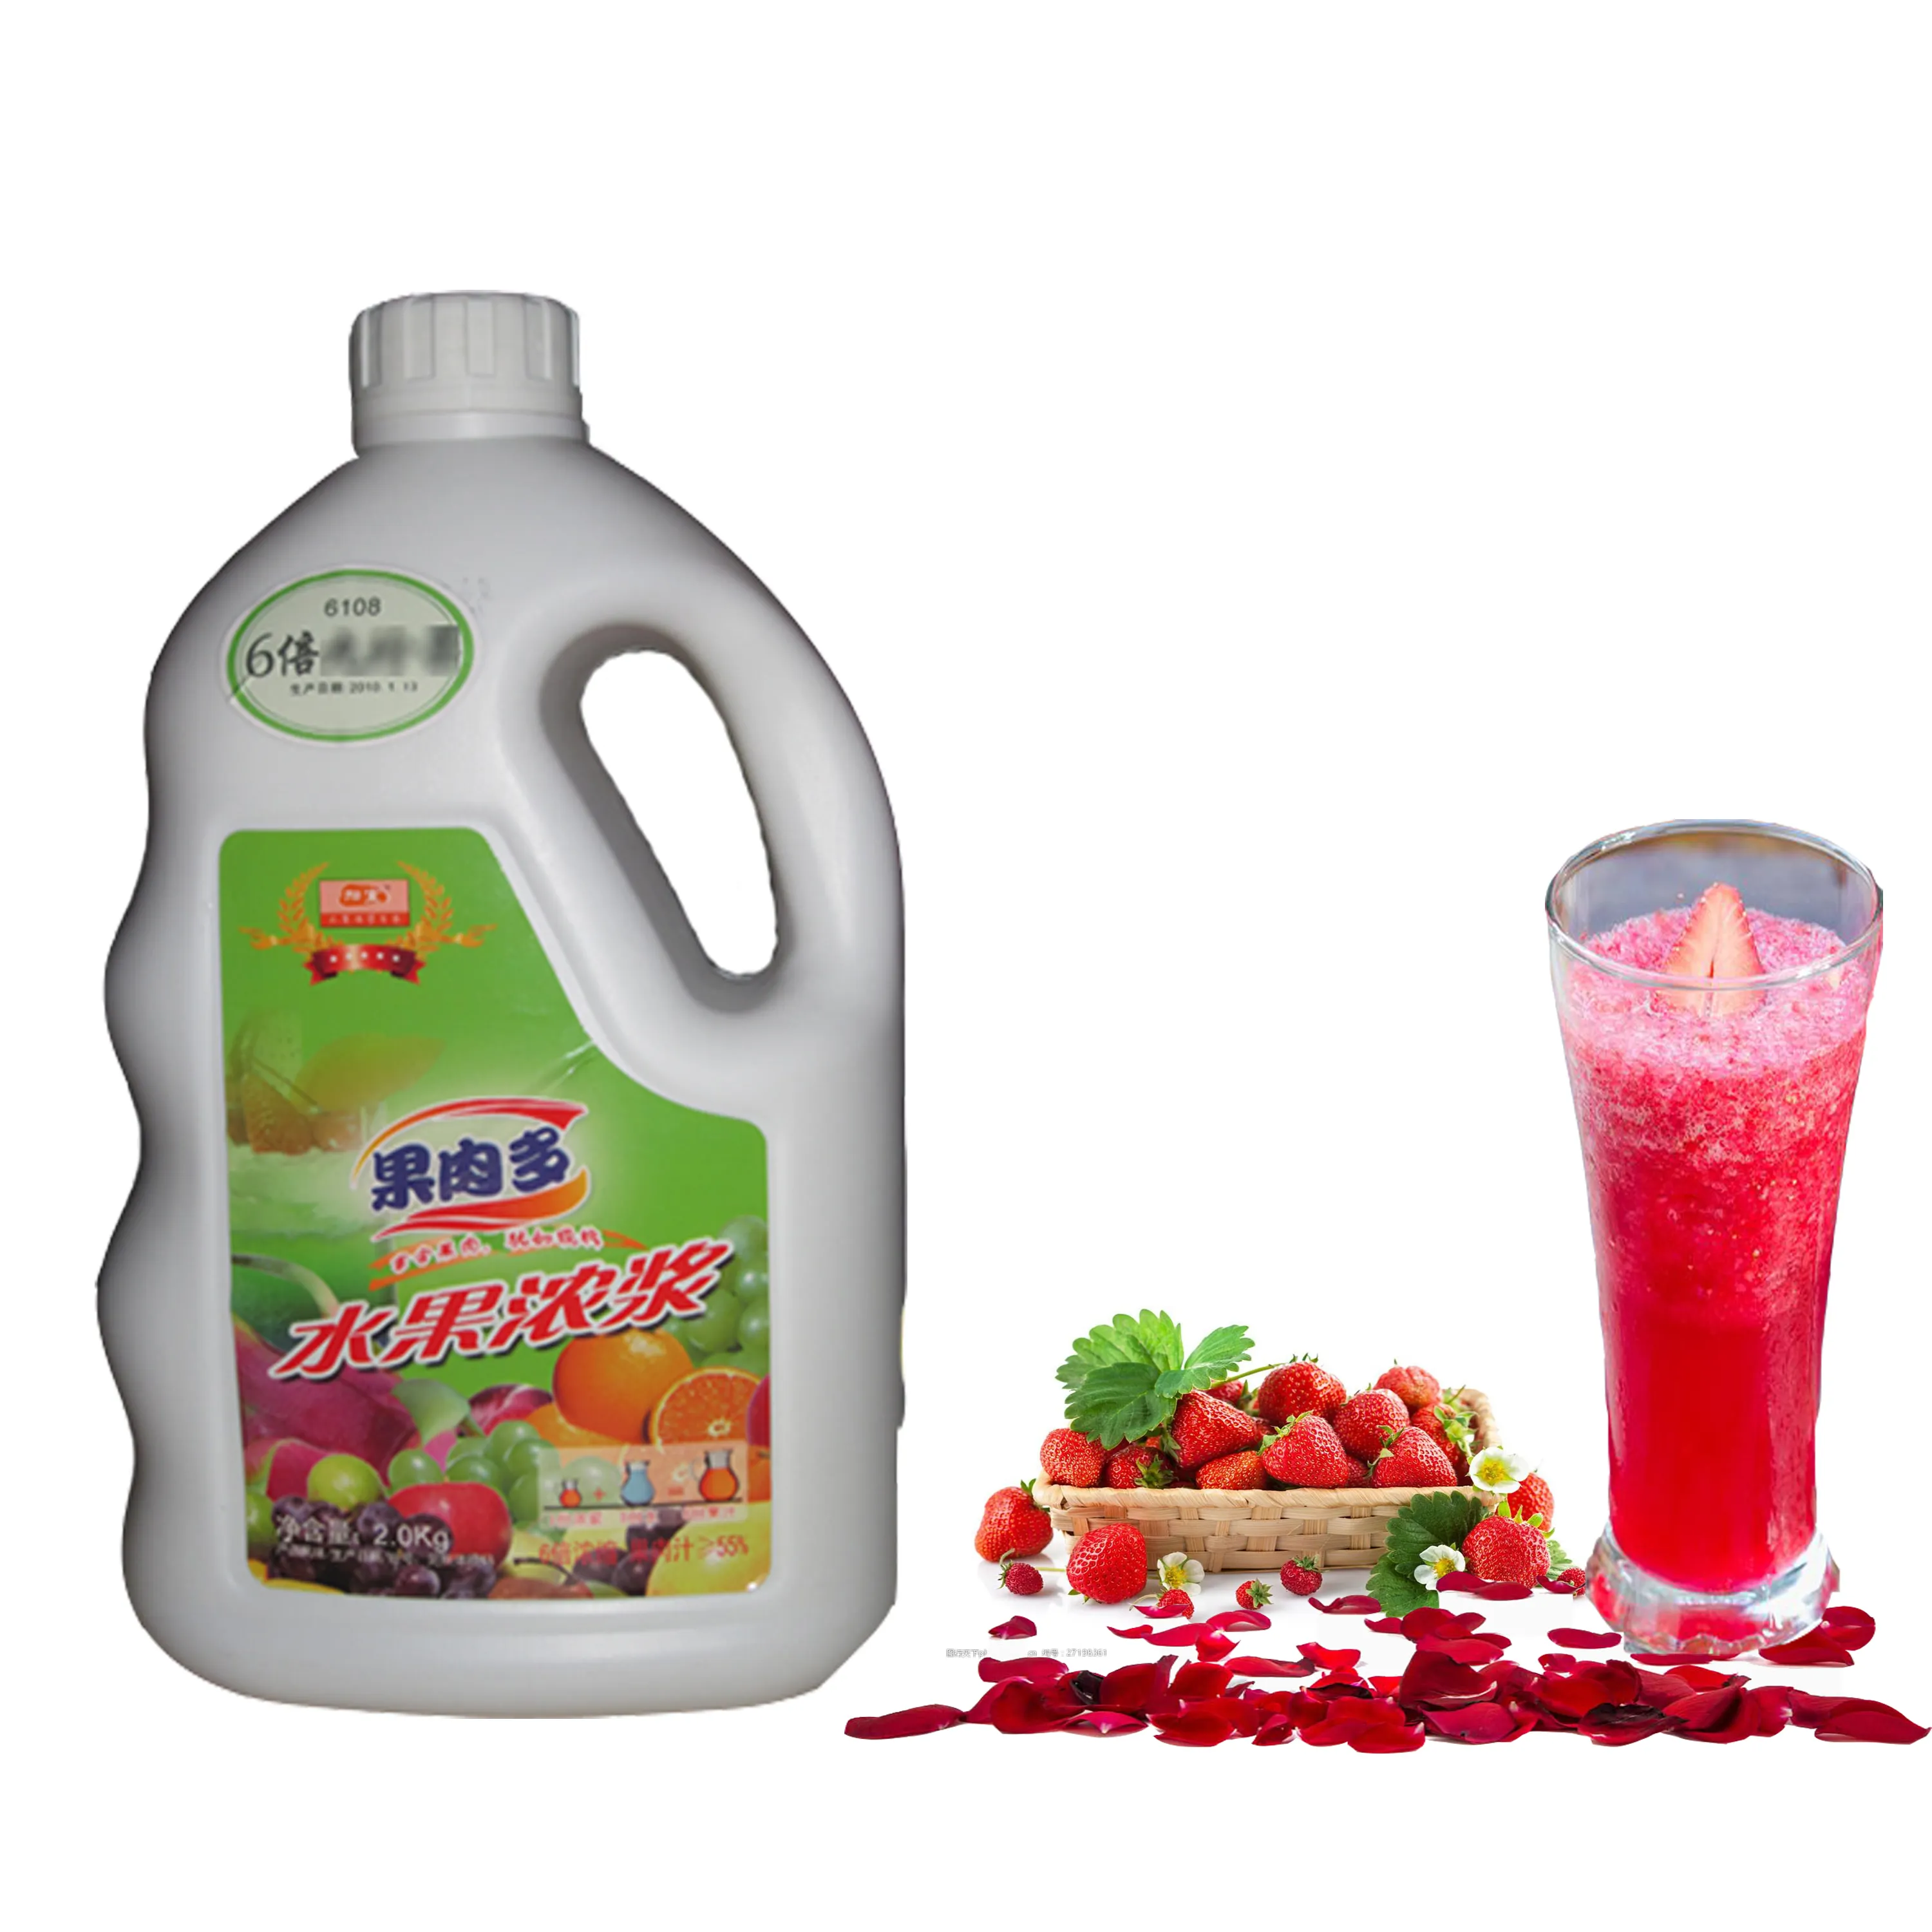 Hecho en China Proveedores de concentrado de jarabe de fruta con sabor a fresa para ingrediente de té de burbujas